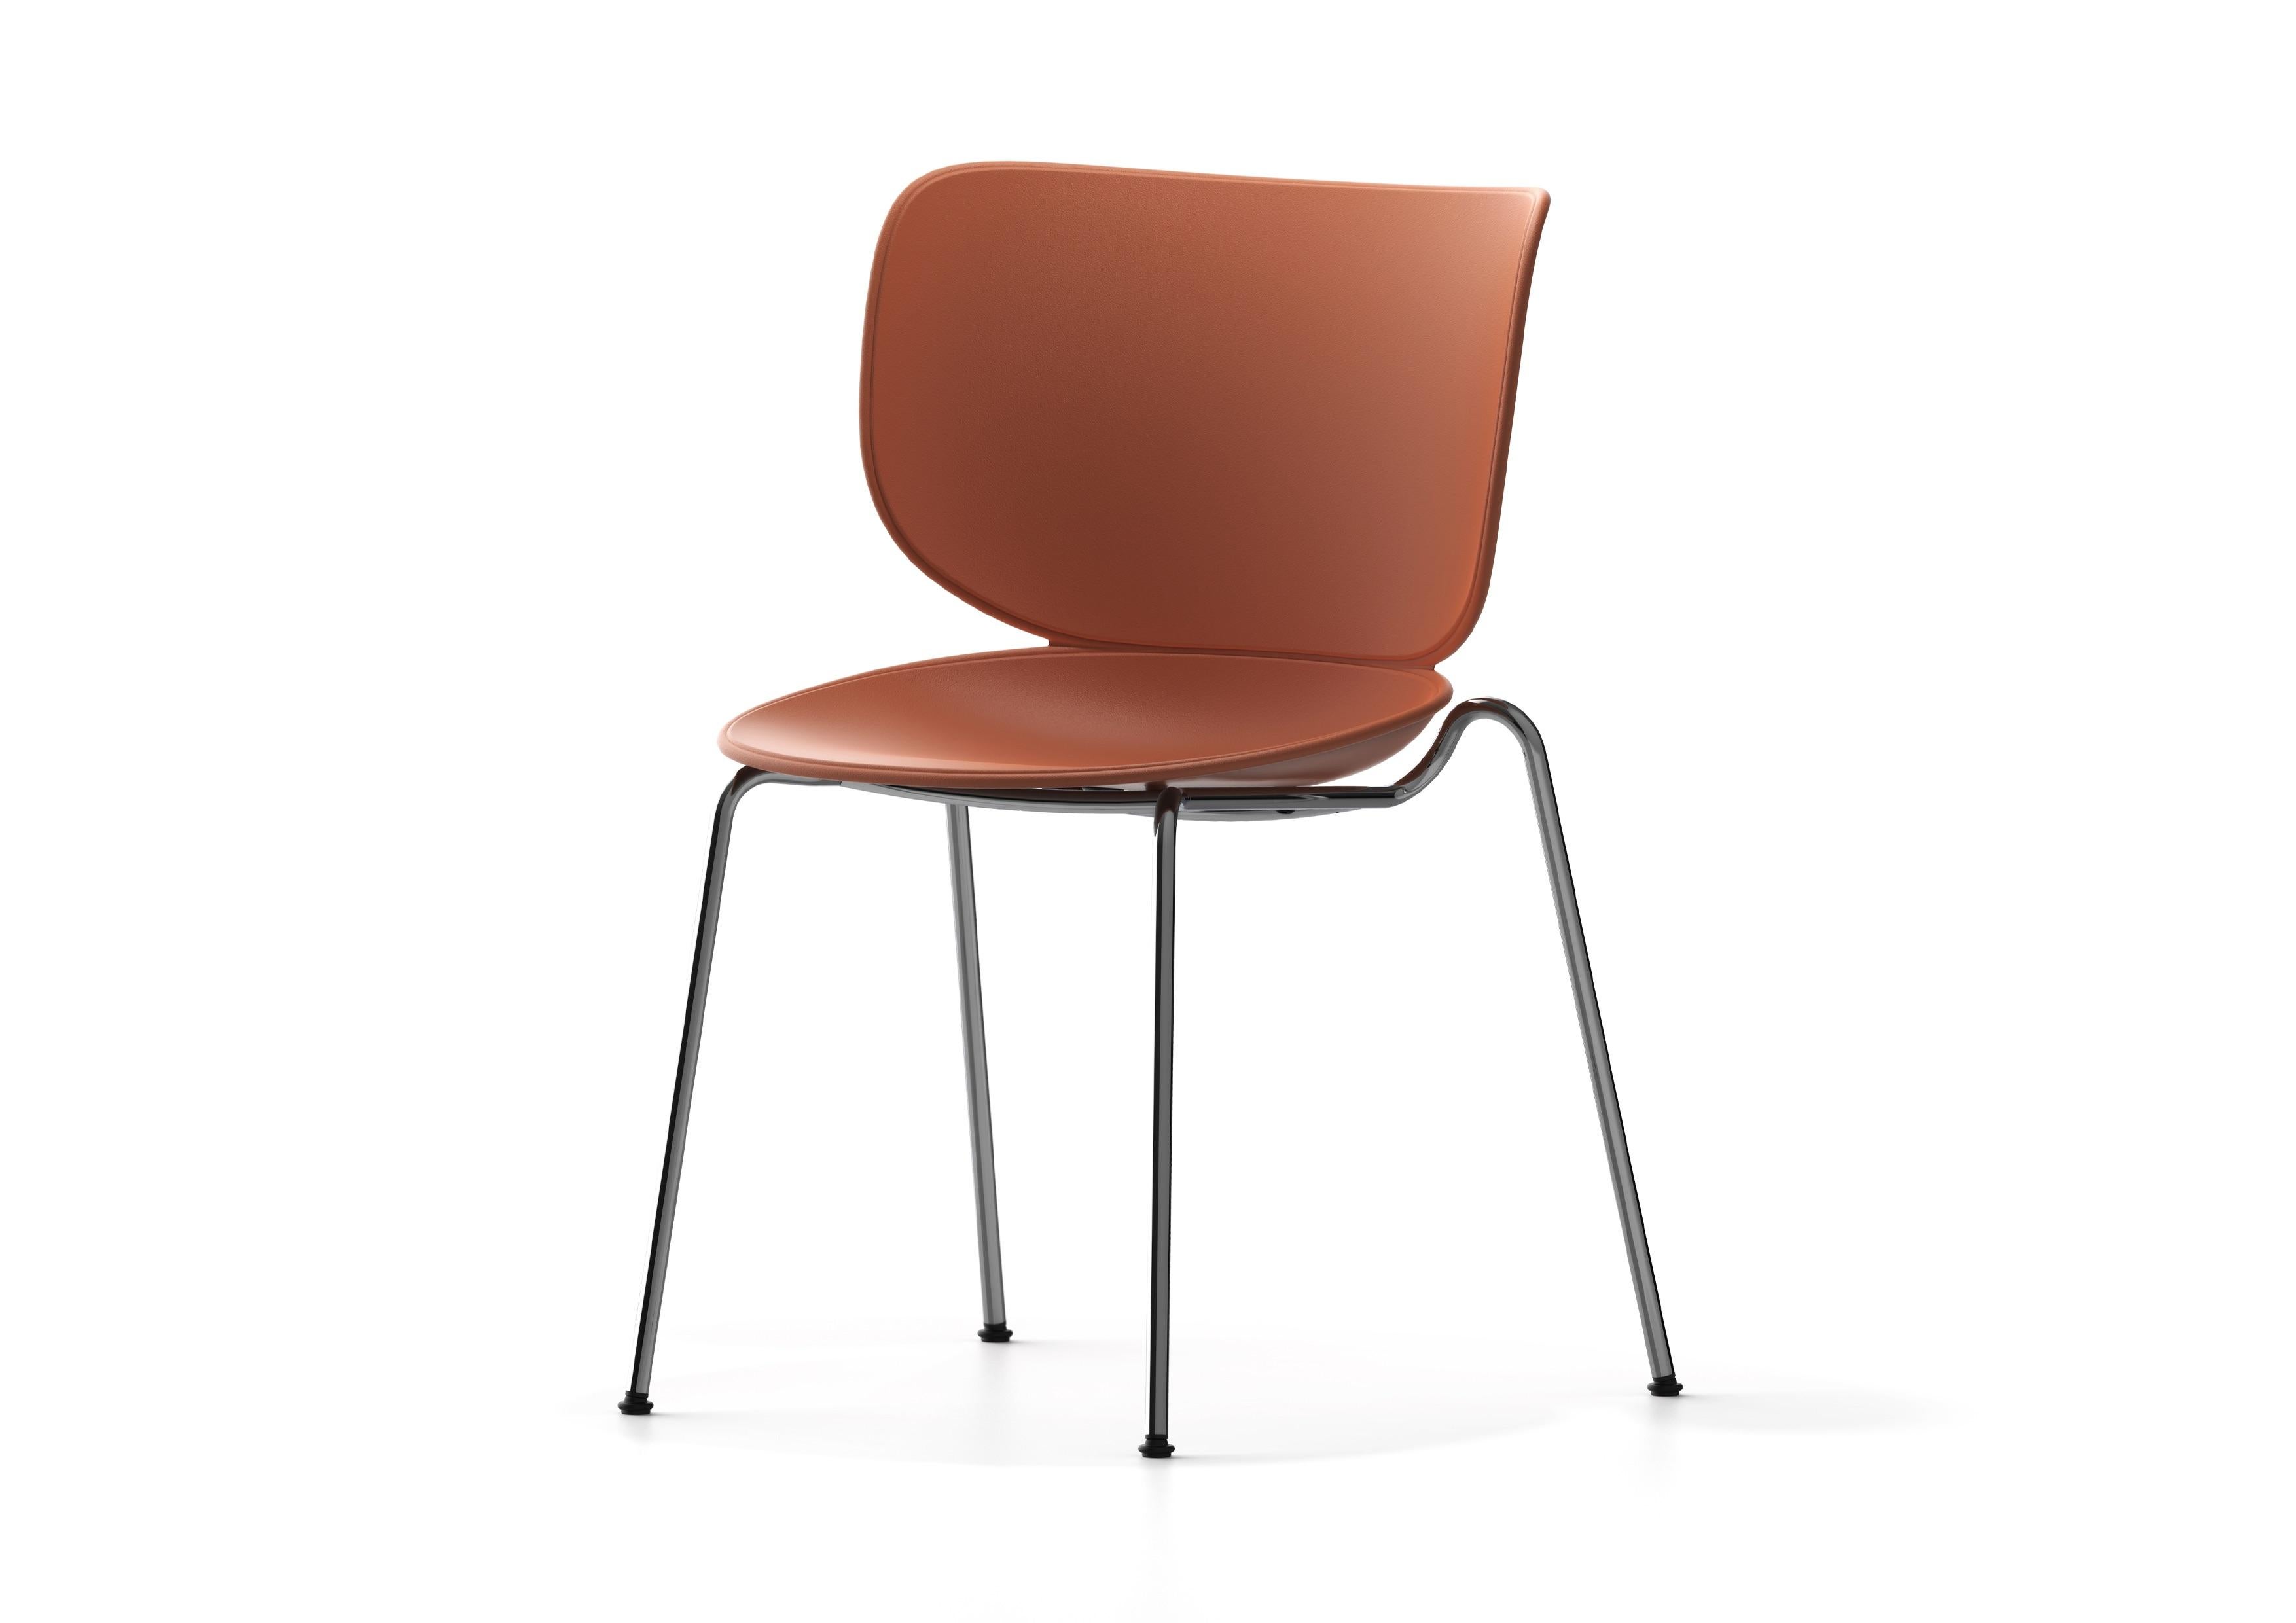 La chaise Hana de Simone Bonanni allie un confort intemporel à une distinction inégalée. Inspiré par le déploiement d'une fleur, son design unique séduit par ses formes organiques, ses lignes courbes et son dossier en forme de pétale. Polyvalente et